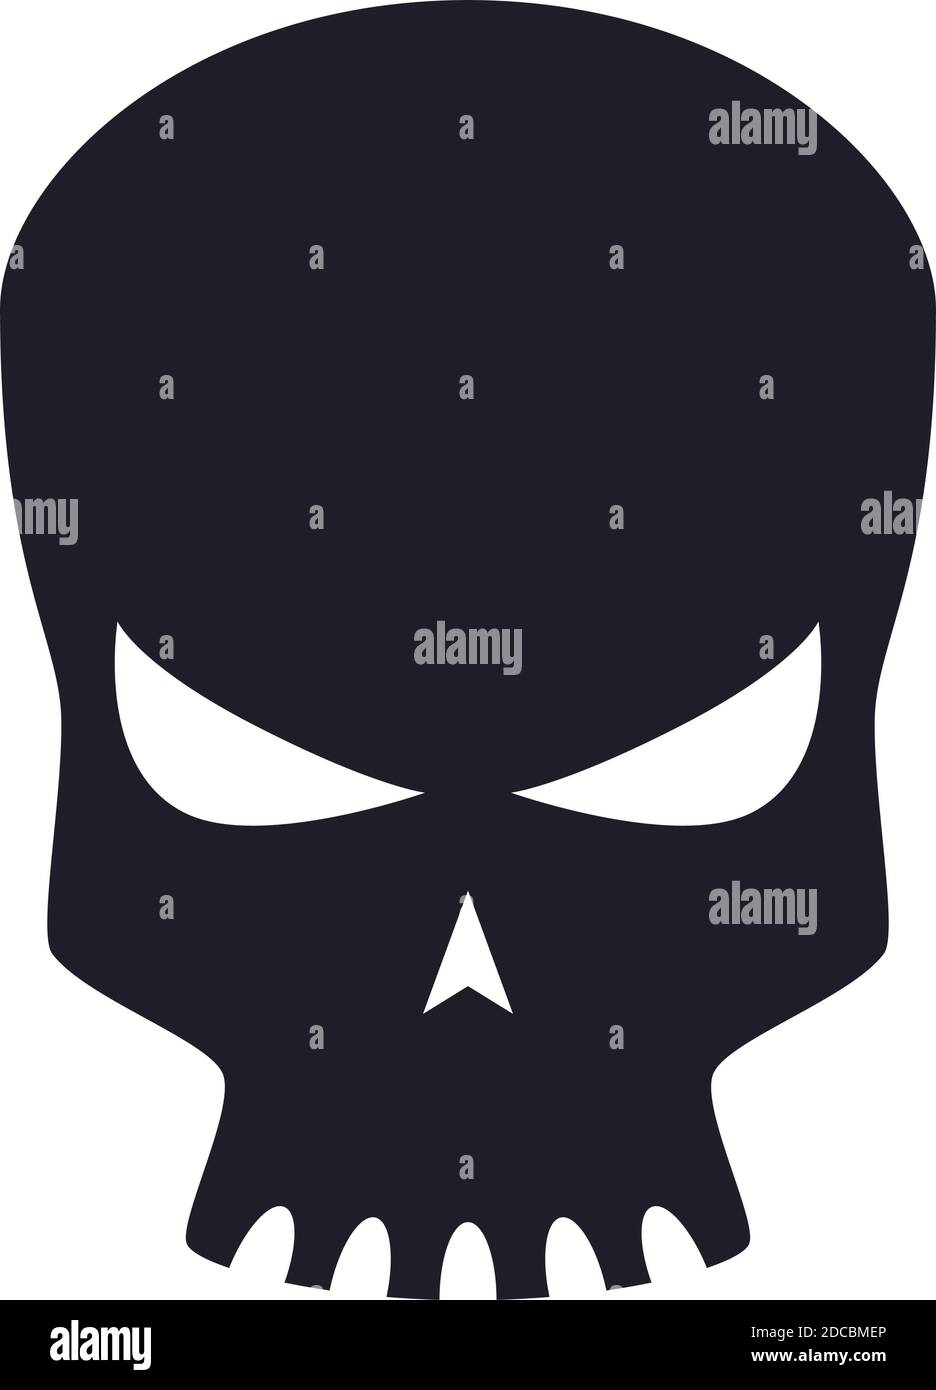 Scary Roboter Schädel Alien Kopf Avatar Symbol oder Symbol Vektor Abbildung Stock Vektor